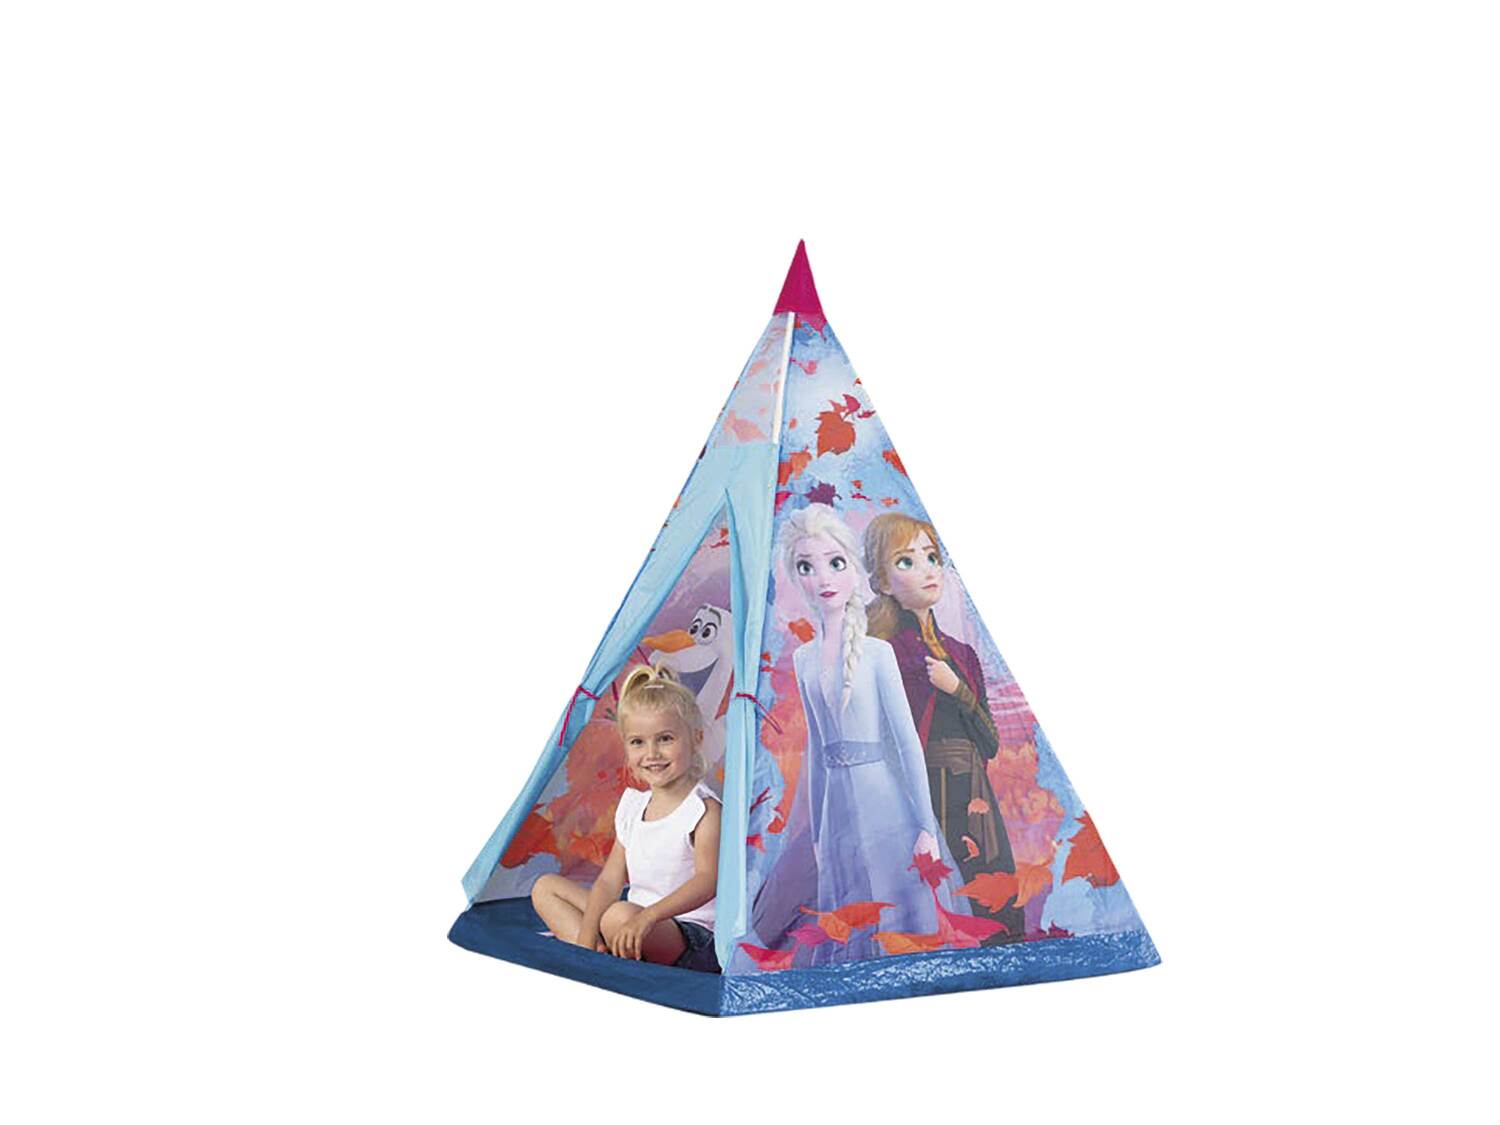 Namiot dziecięcy , cena 59,90 PLN 
- doskonały do zabawy w domu lub w ogrodzie
- ...